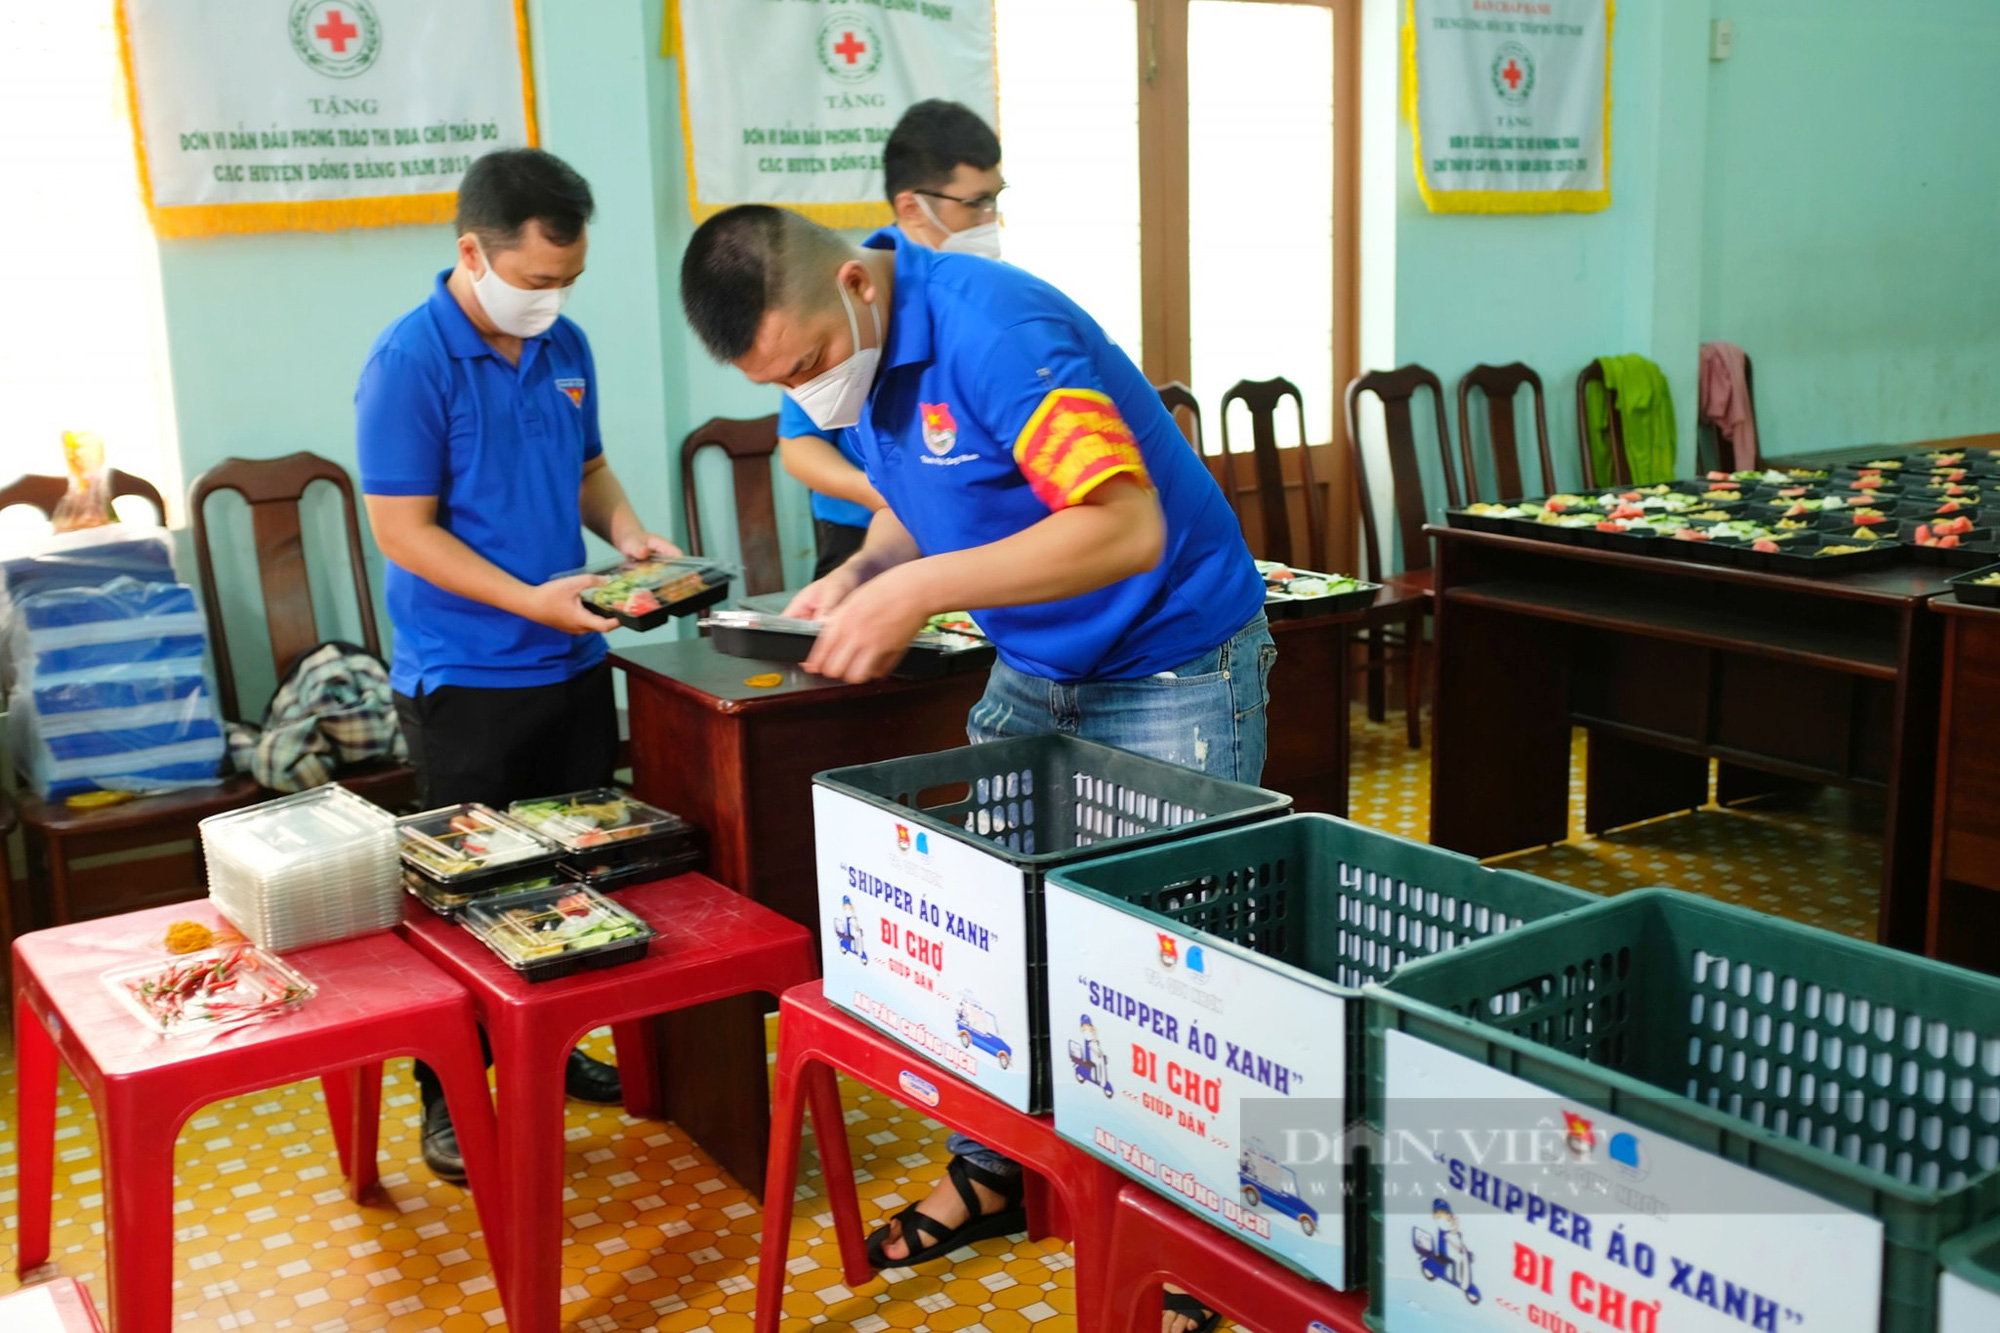 'Shipper áo xanh' 0 đồng đi chợ giúp dân giữa mùa dịch ở Bình Định được tặng xăng miến phí - Ảnh 5.